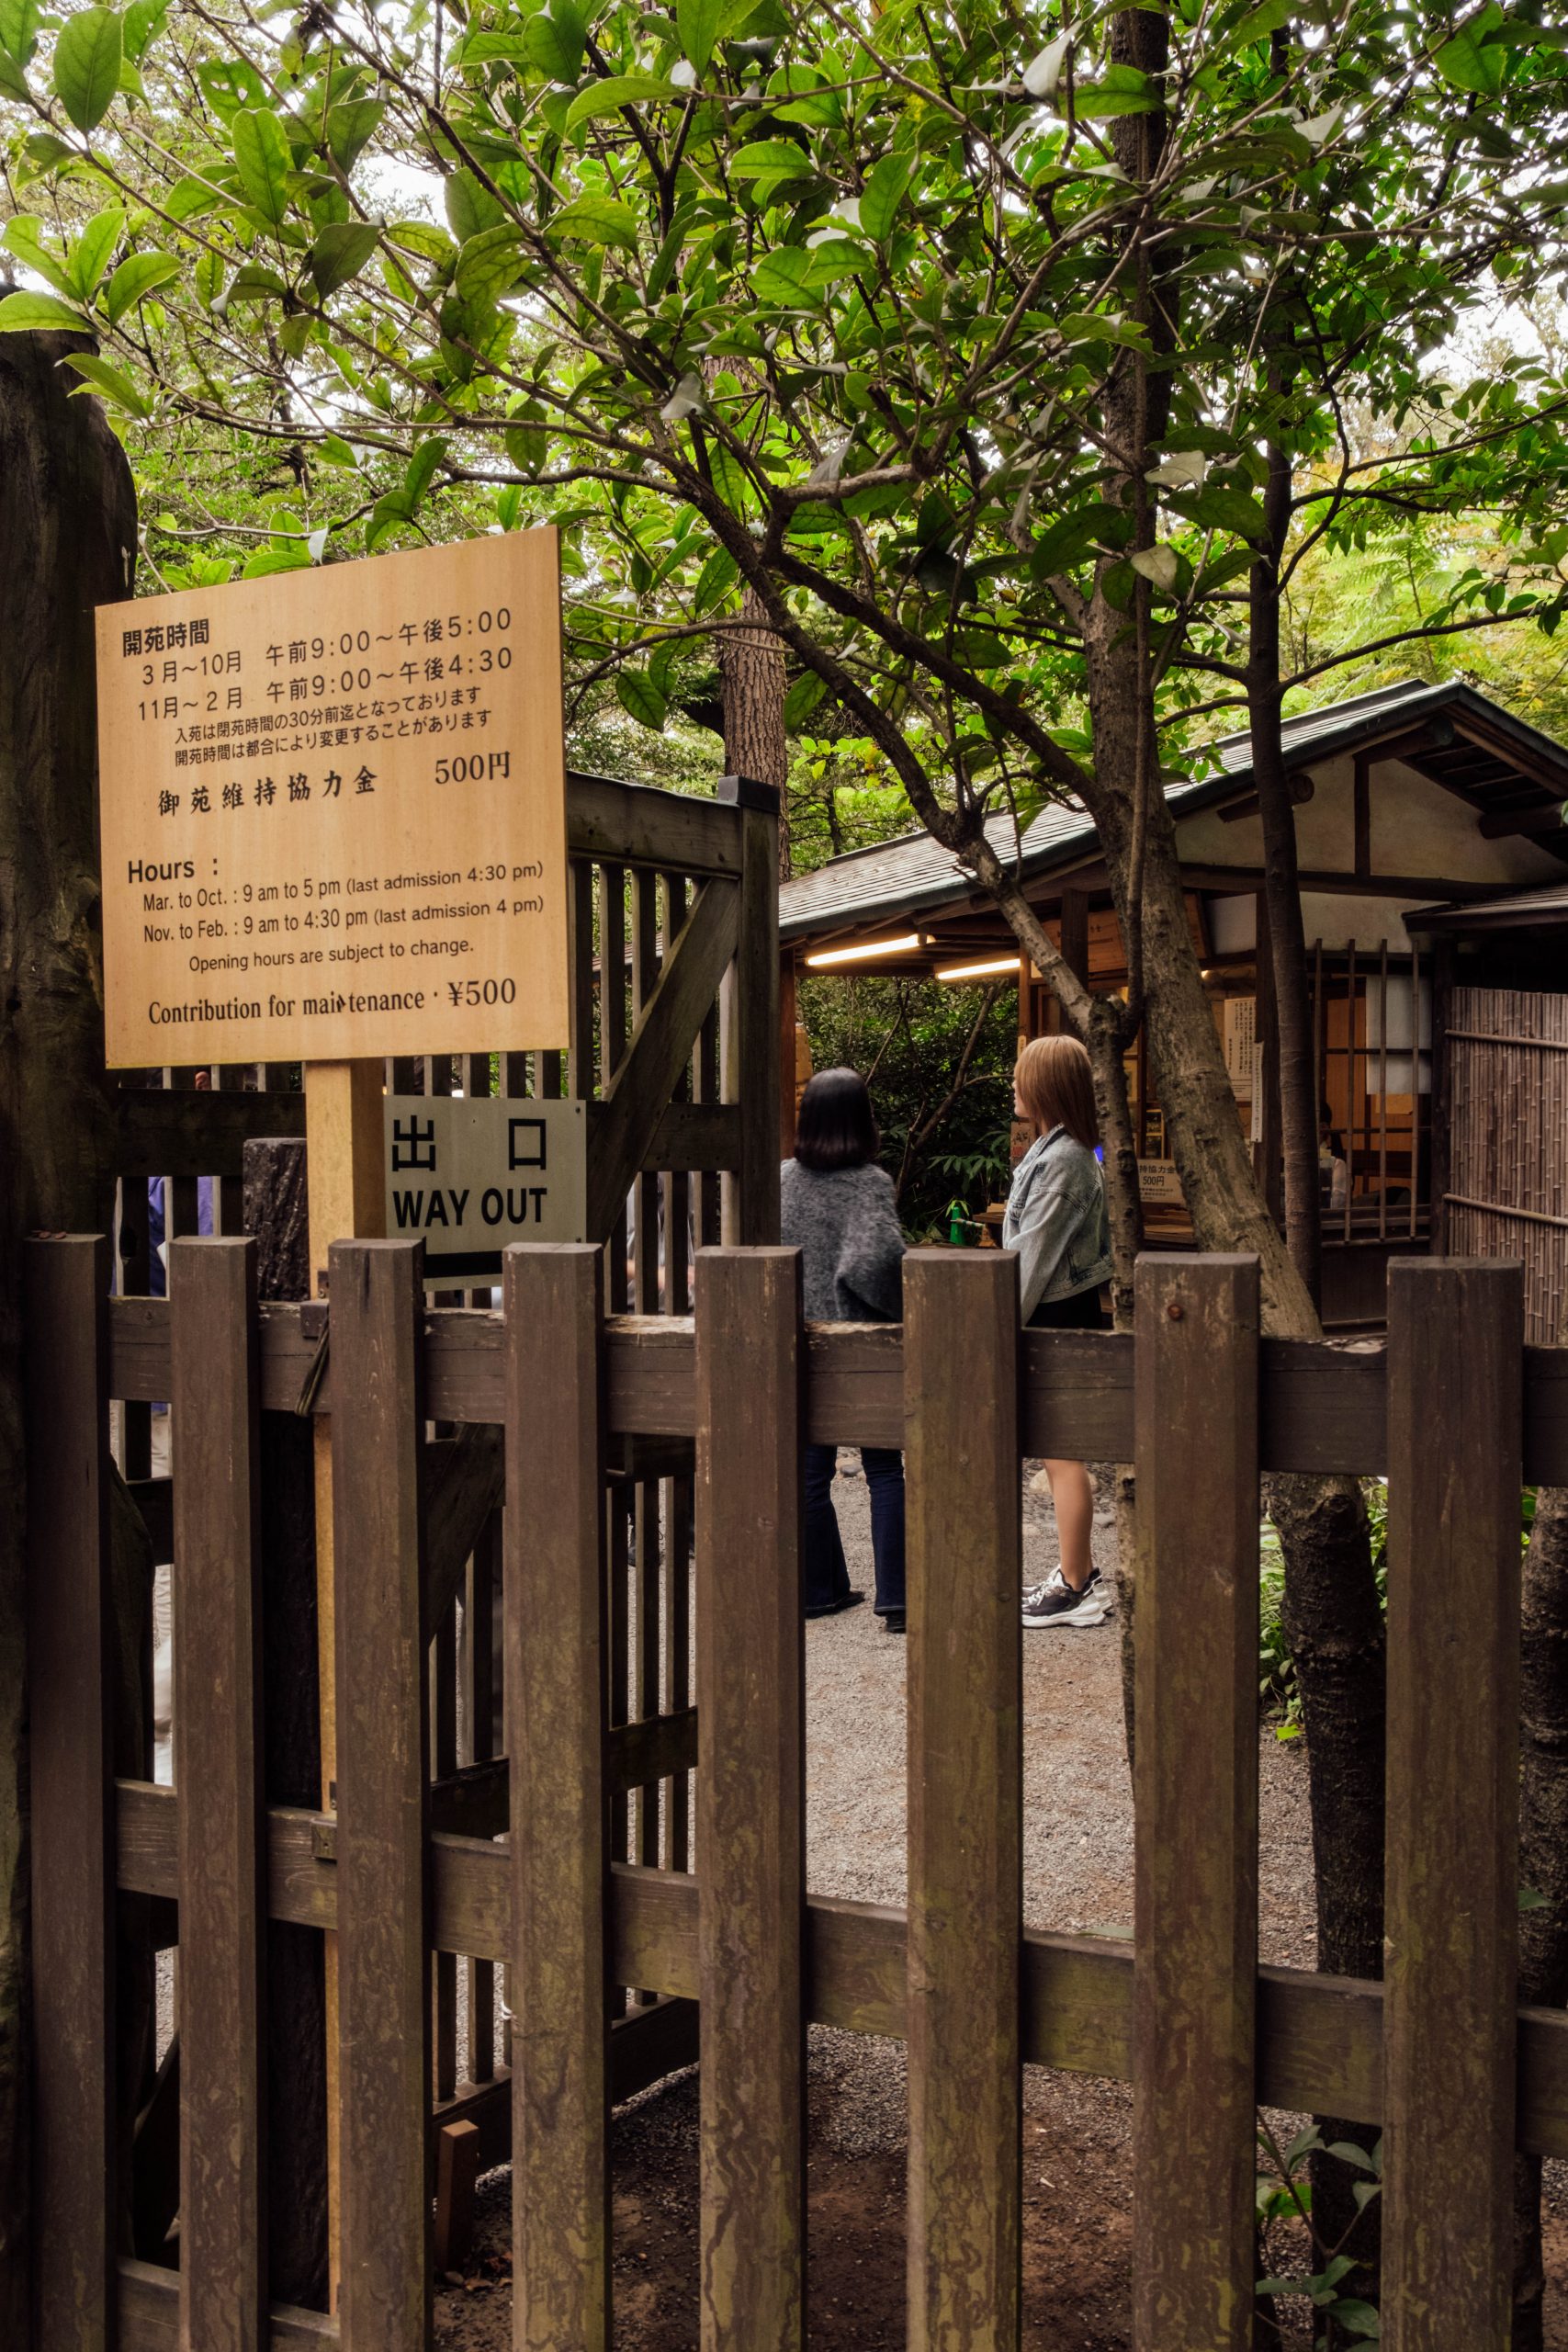 Entrance to the inner garden at Meiji Jingu